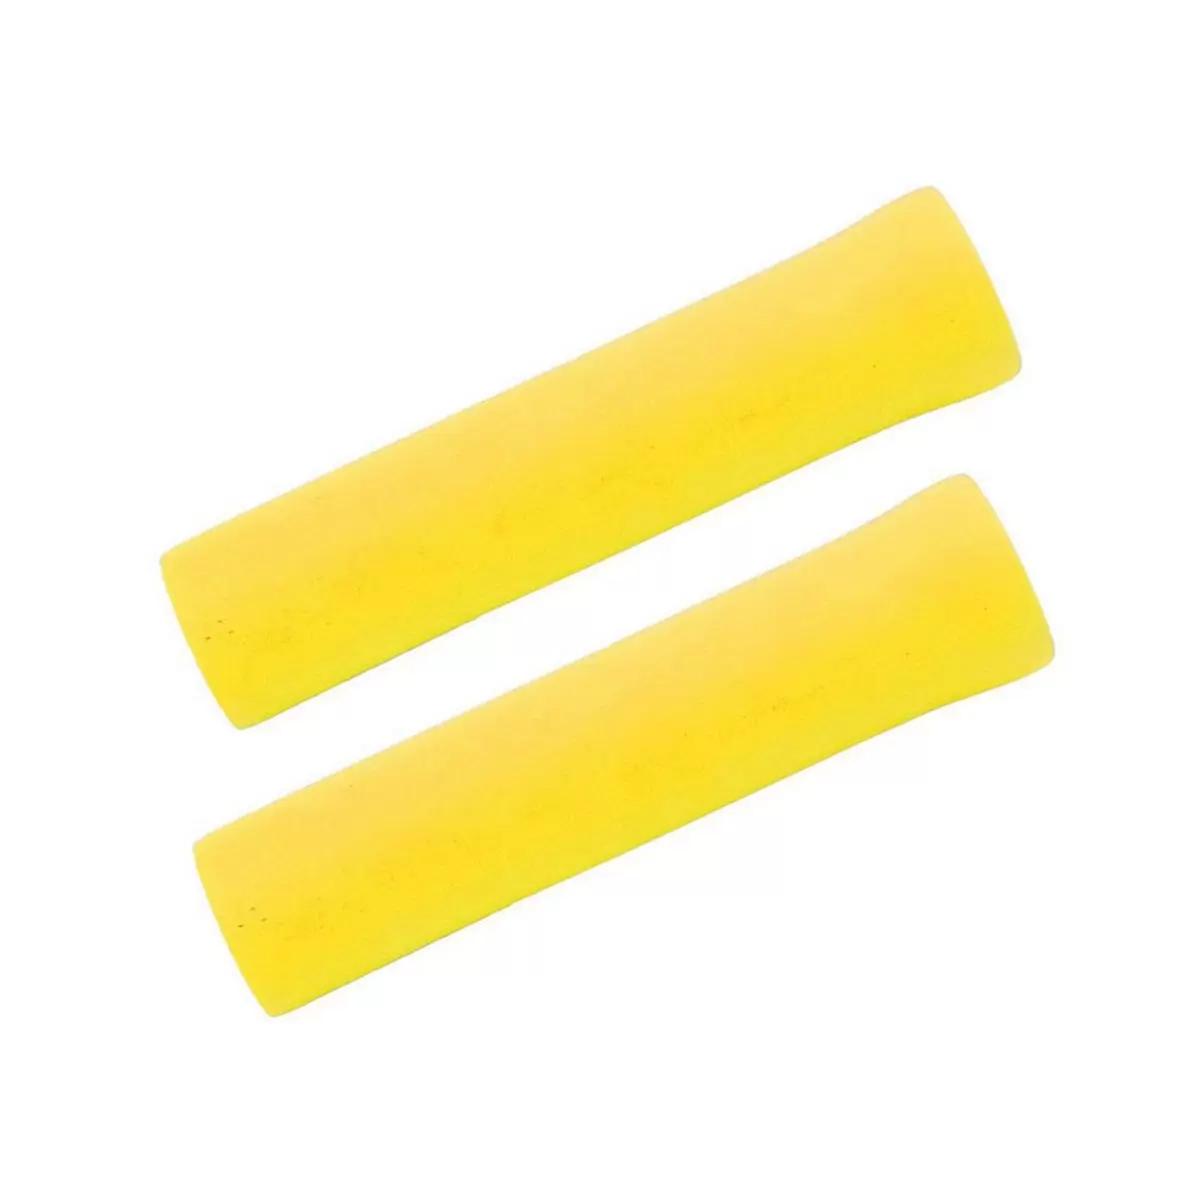 Coppia manopole MTB 130 mm silicone giallo - image